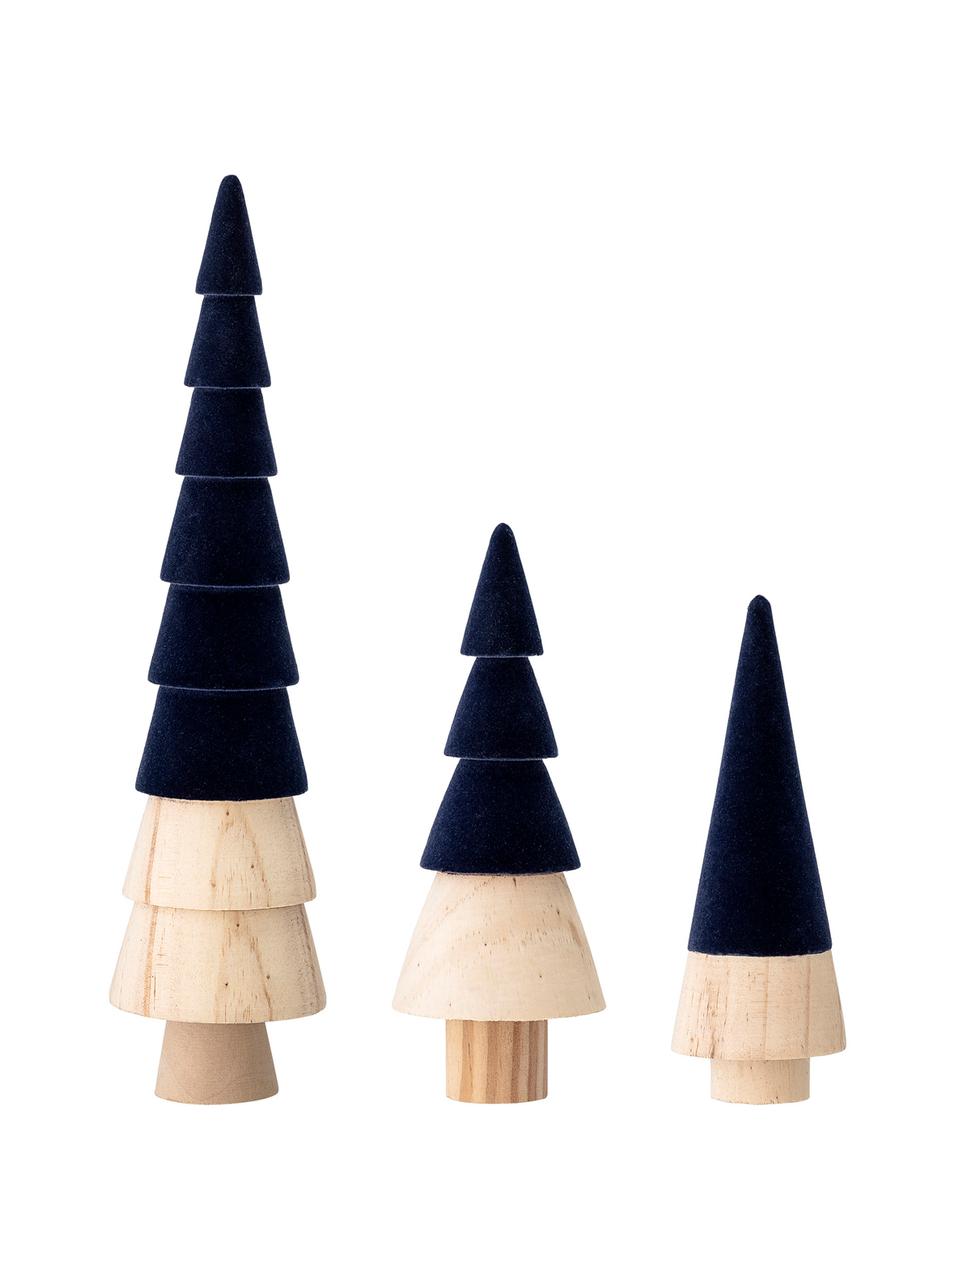 Samt-Deko-Bäume-Set Thace, 3 Stück, Holz, Polyestersamt, Dunkelblau, Holz, Set mit verschiedenen Größen